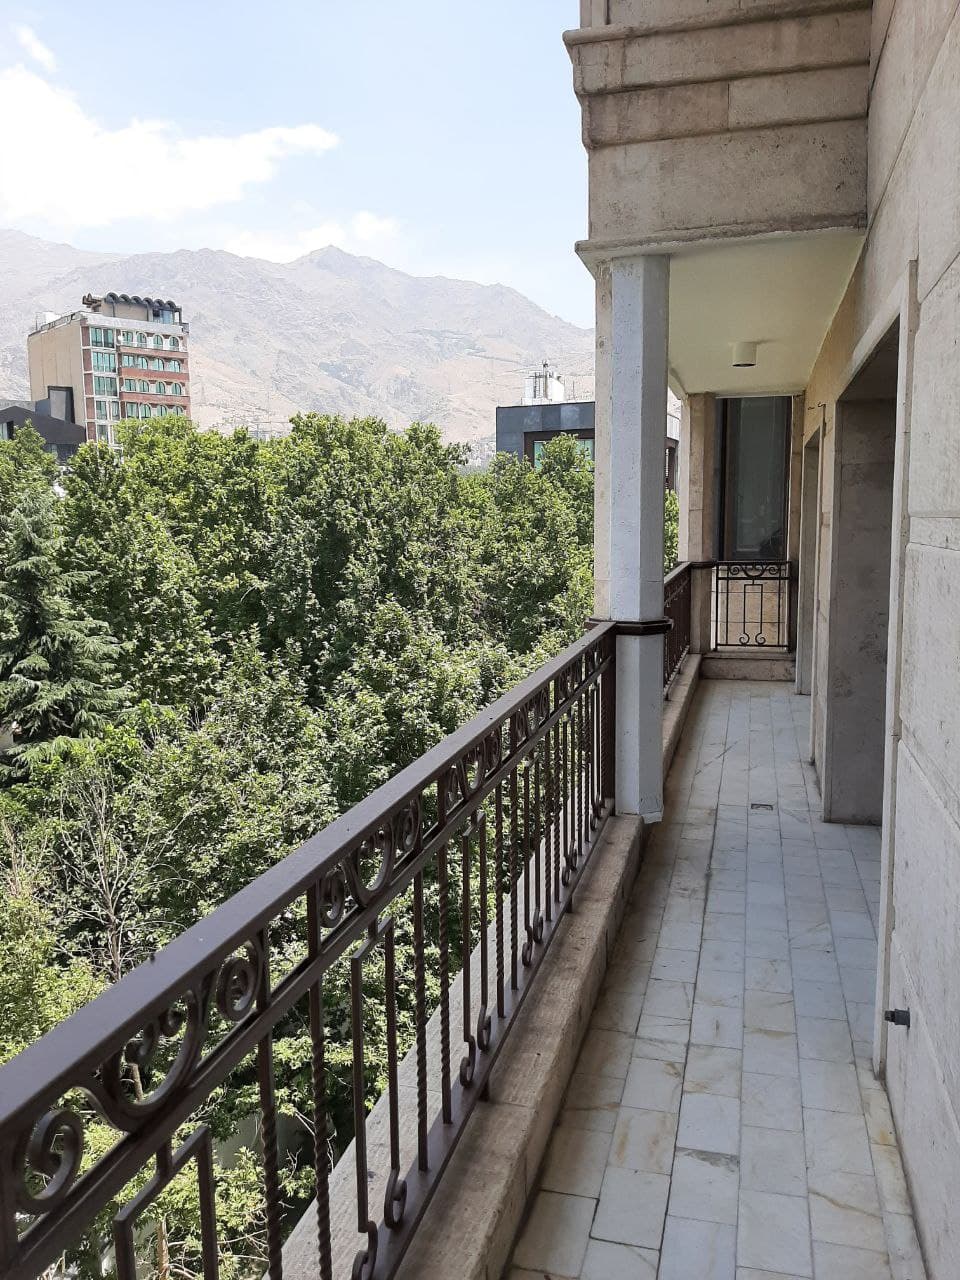 فروش خانه کلنگی در یوسف آباد خیابان فتحی شقاقی 207 متر